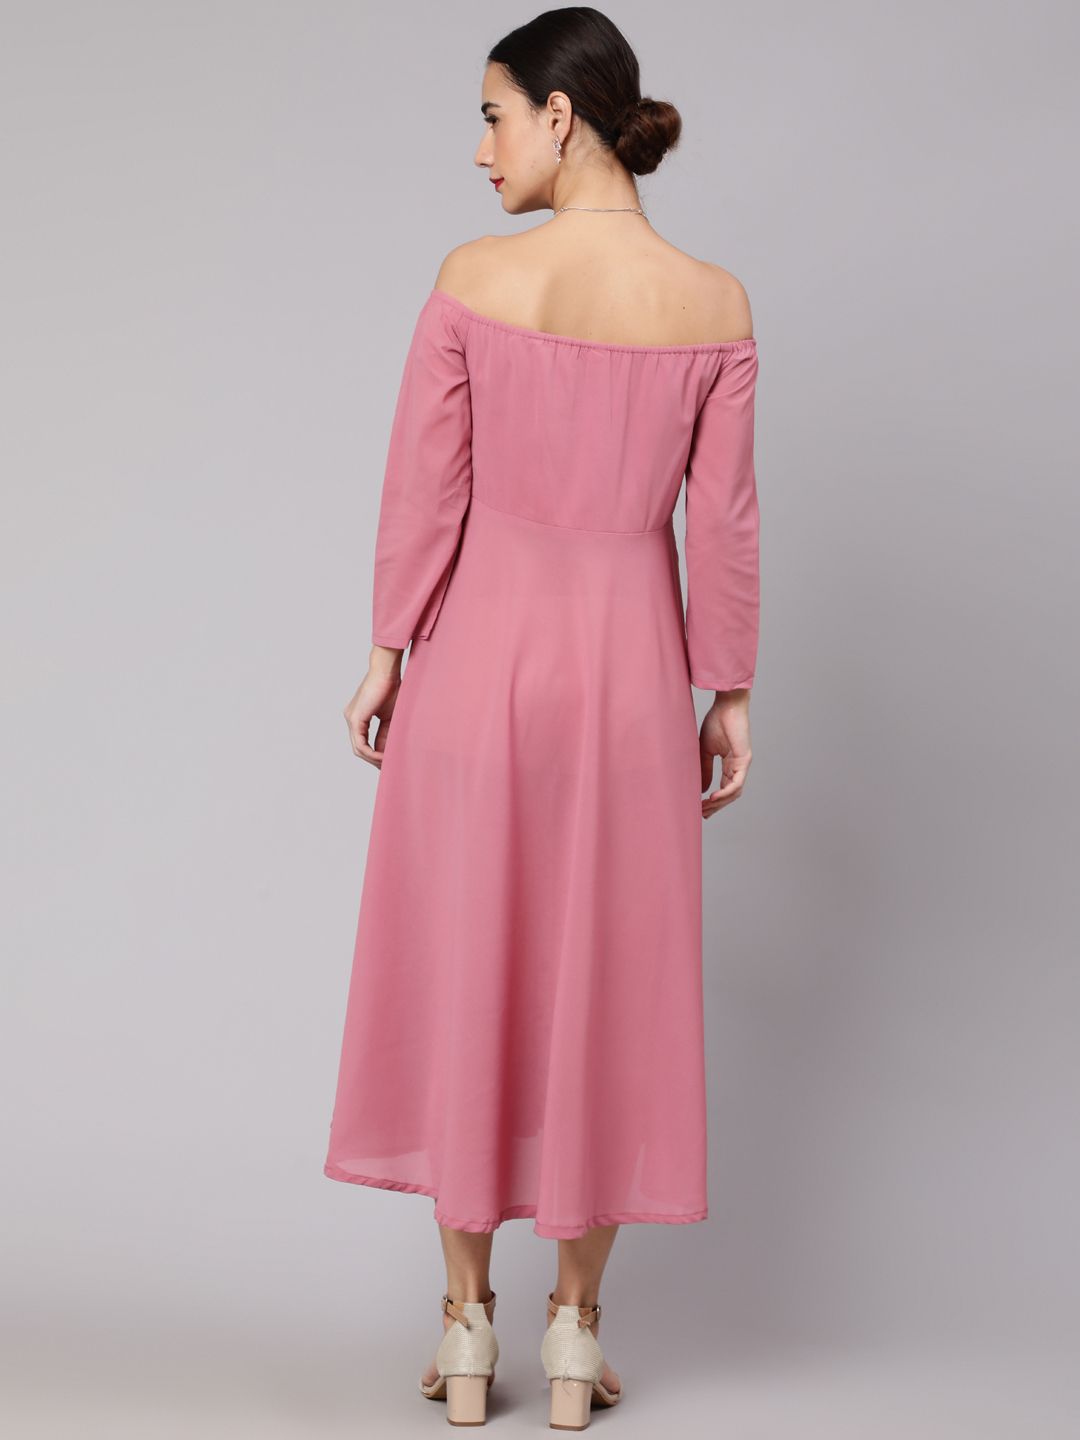 Pink Floral Print Off Shoulder Dress